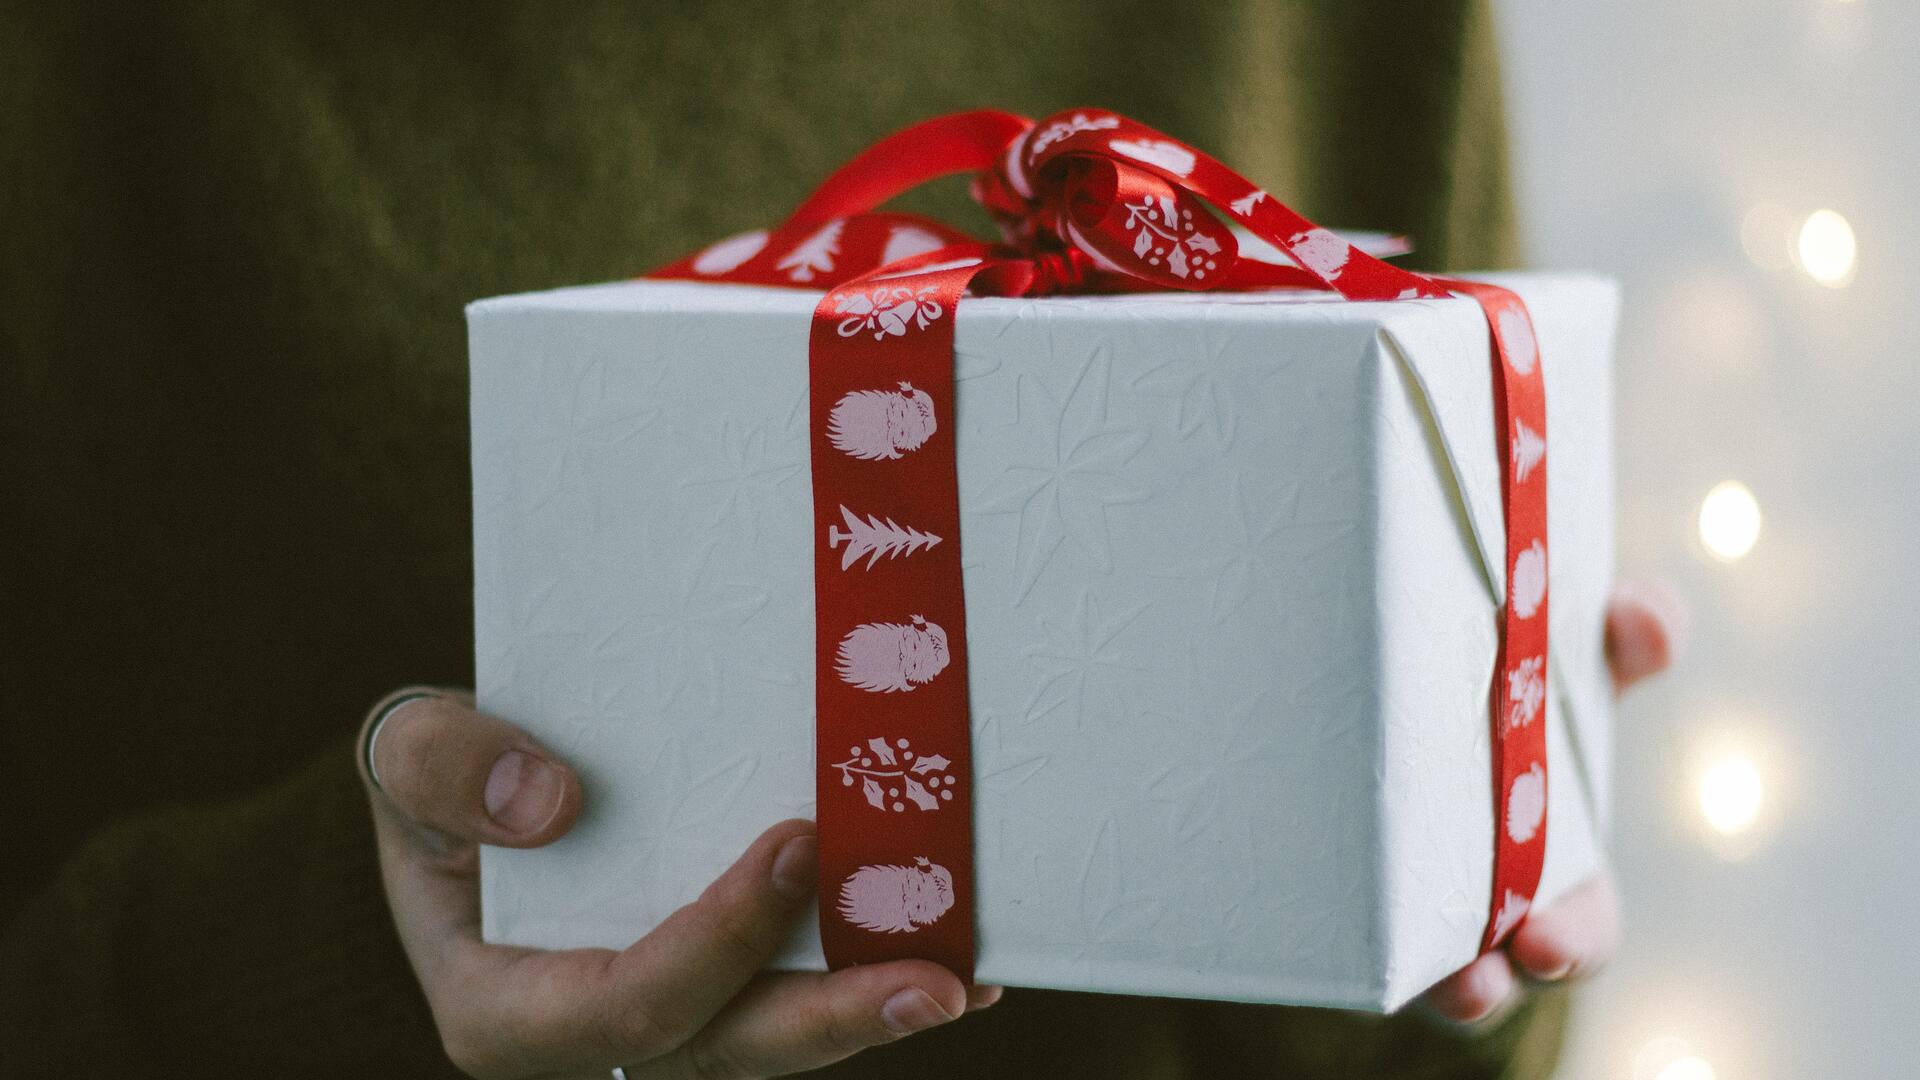 Henkilö pitelee käsissään kuution muotoista valkoiseen paperiin paketoitua lahjapakettia, jossa on punainen joulunauha.